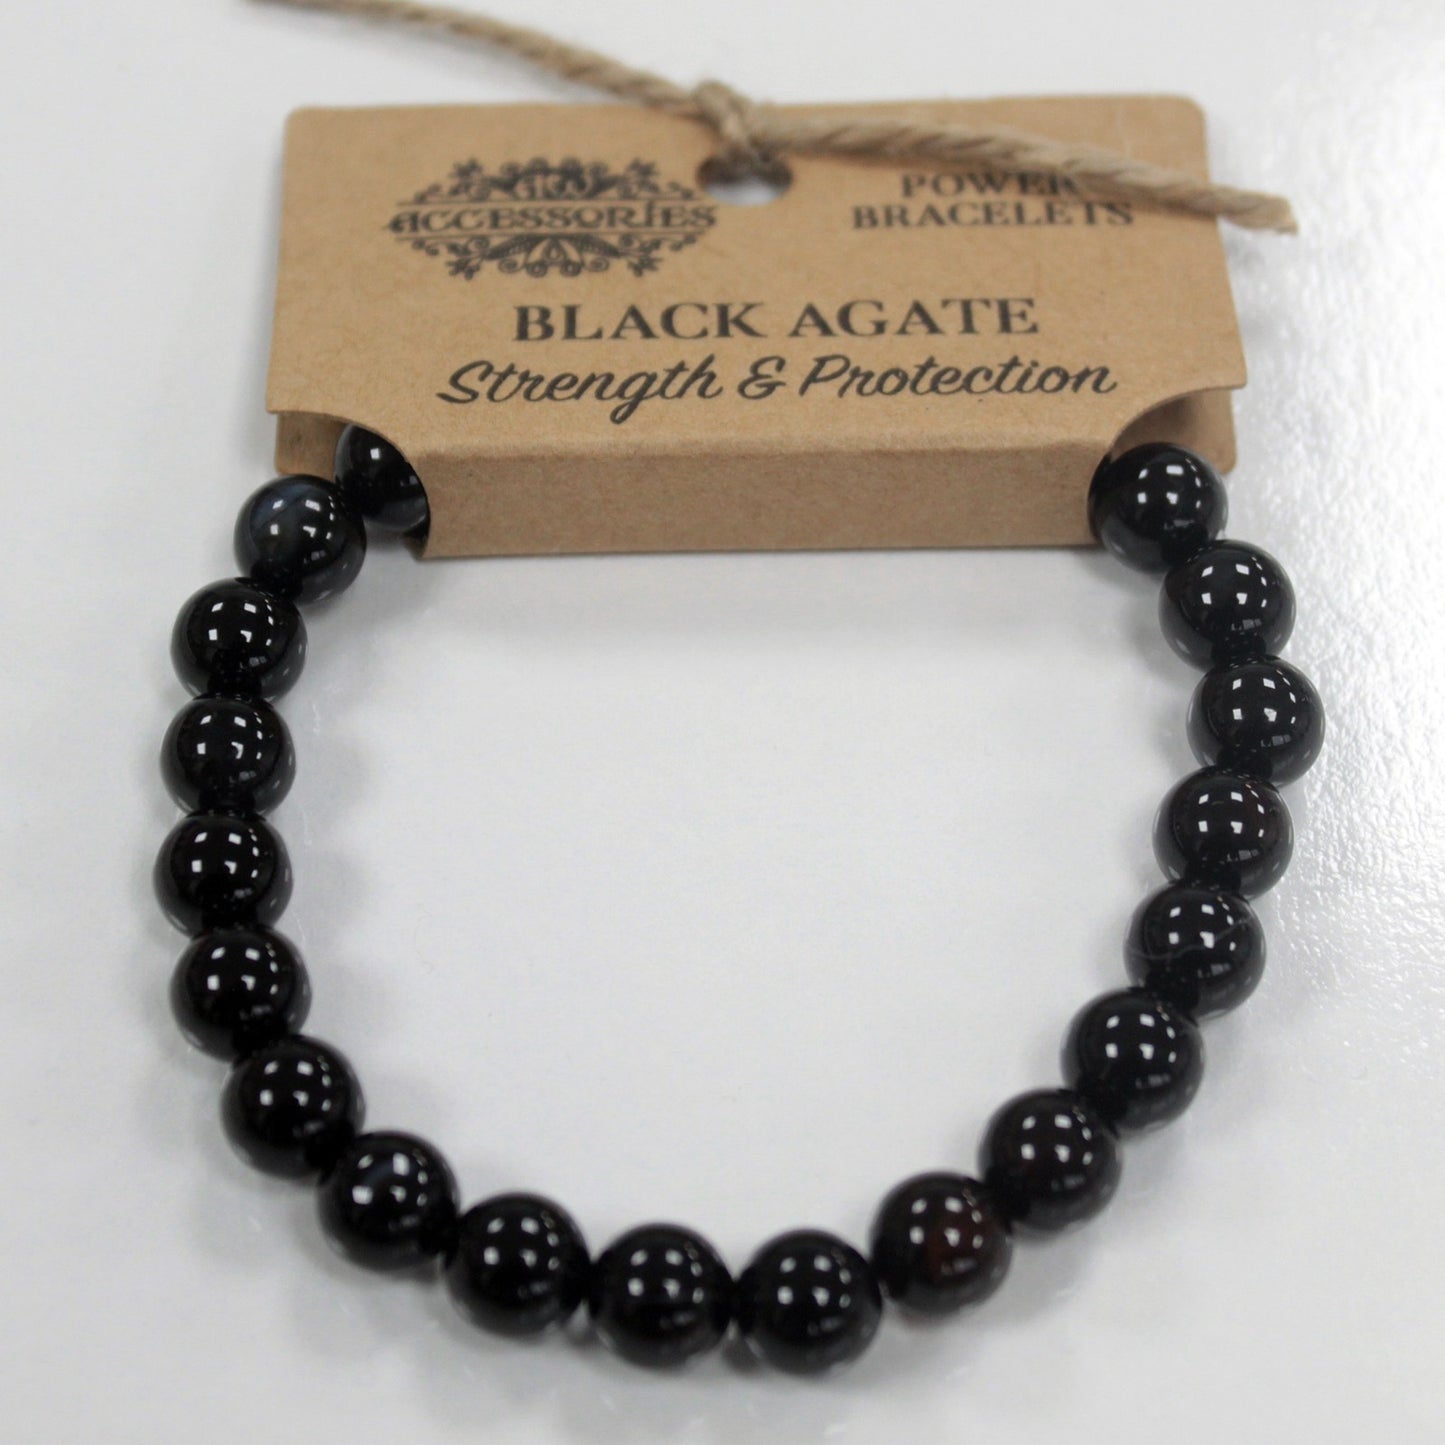 Pulsera brazalete piedras negras de Ágata negra con etiqueta de cartón para colgar en expositor